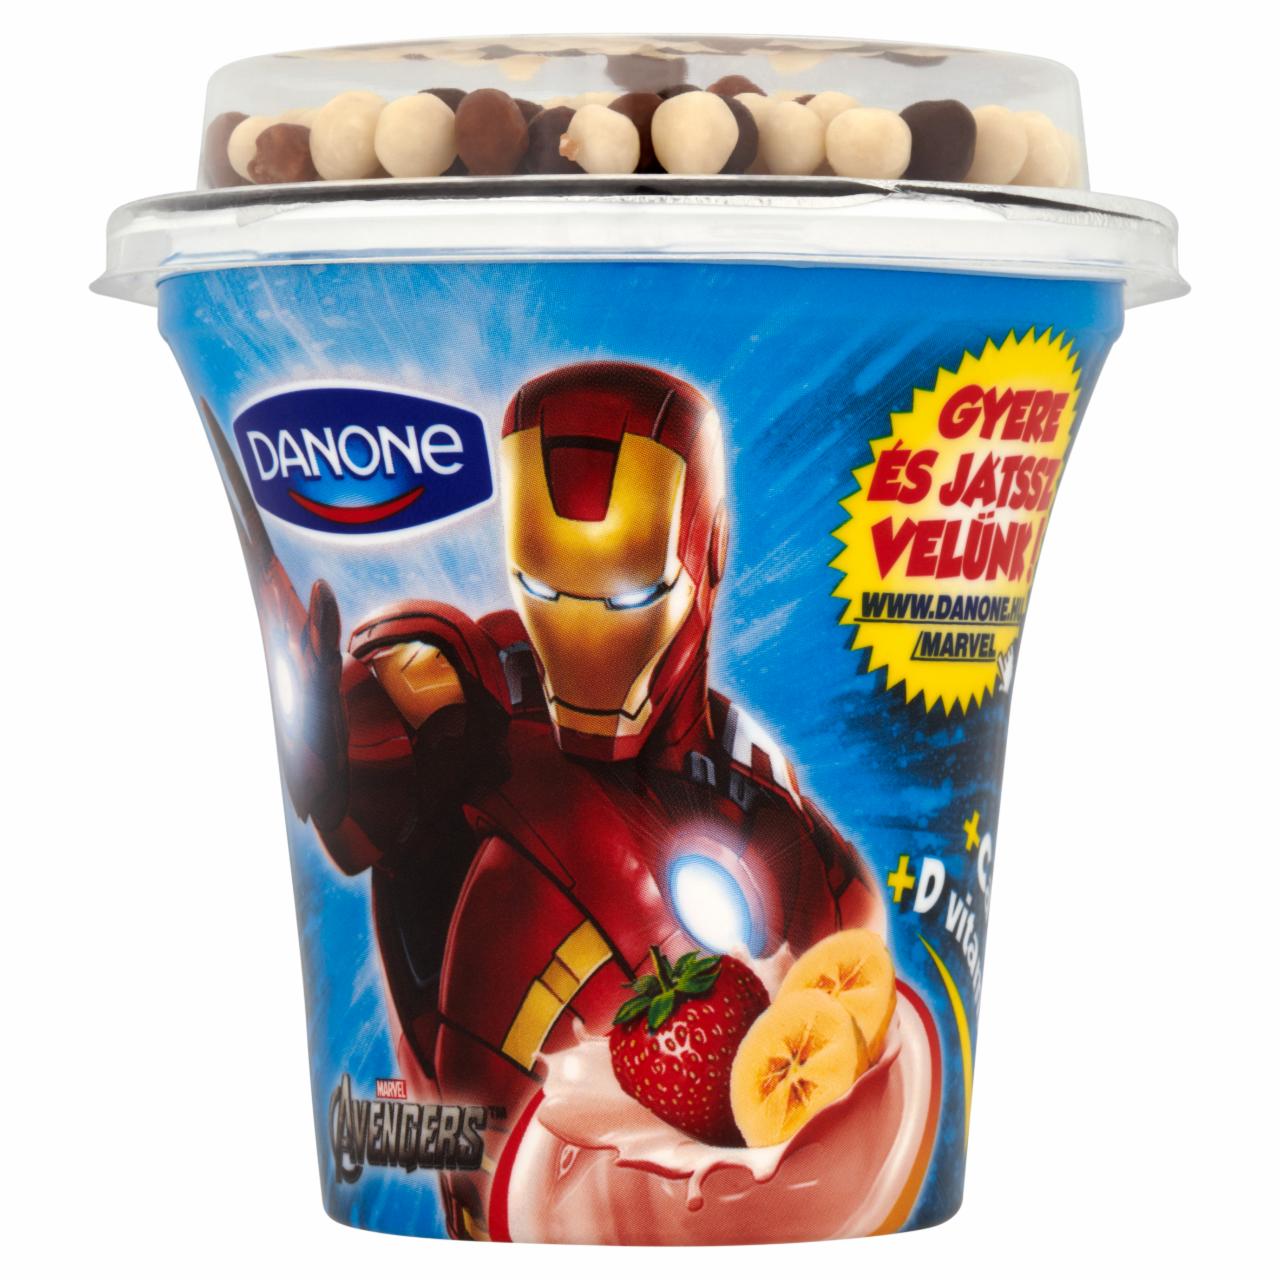 Képek - Danone eper-banánízű joghurt ét-, tej- és fehércsokoládéval bevont gabonagolyókkal 106 g